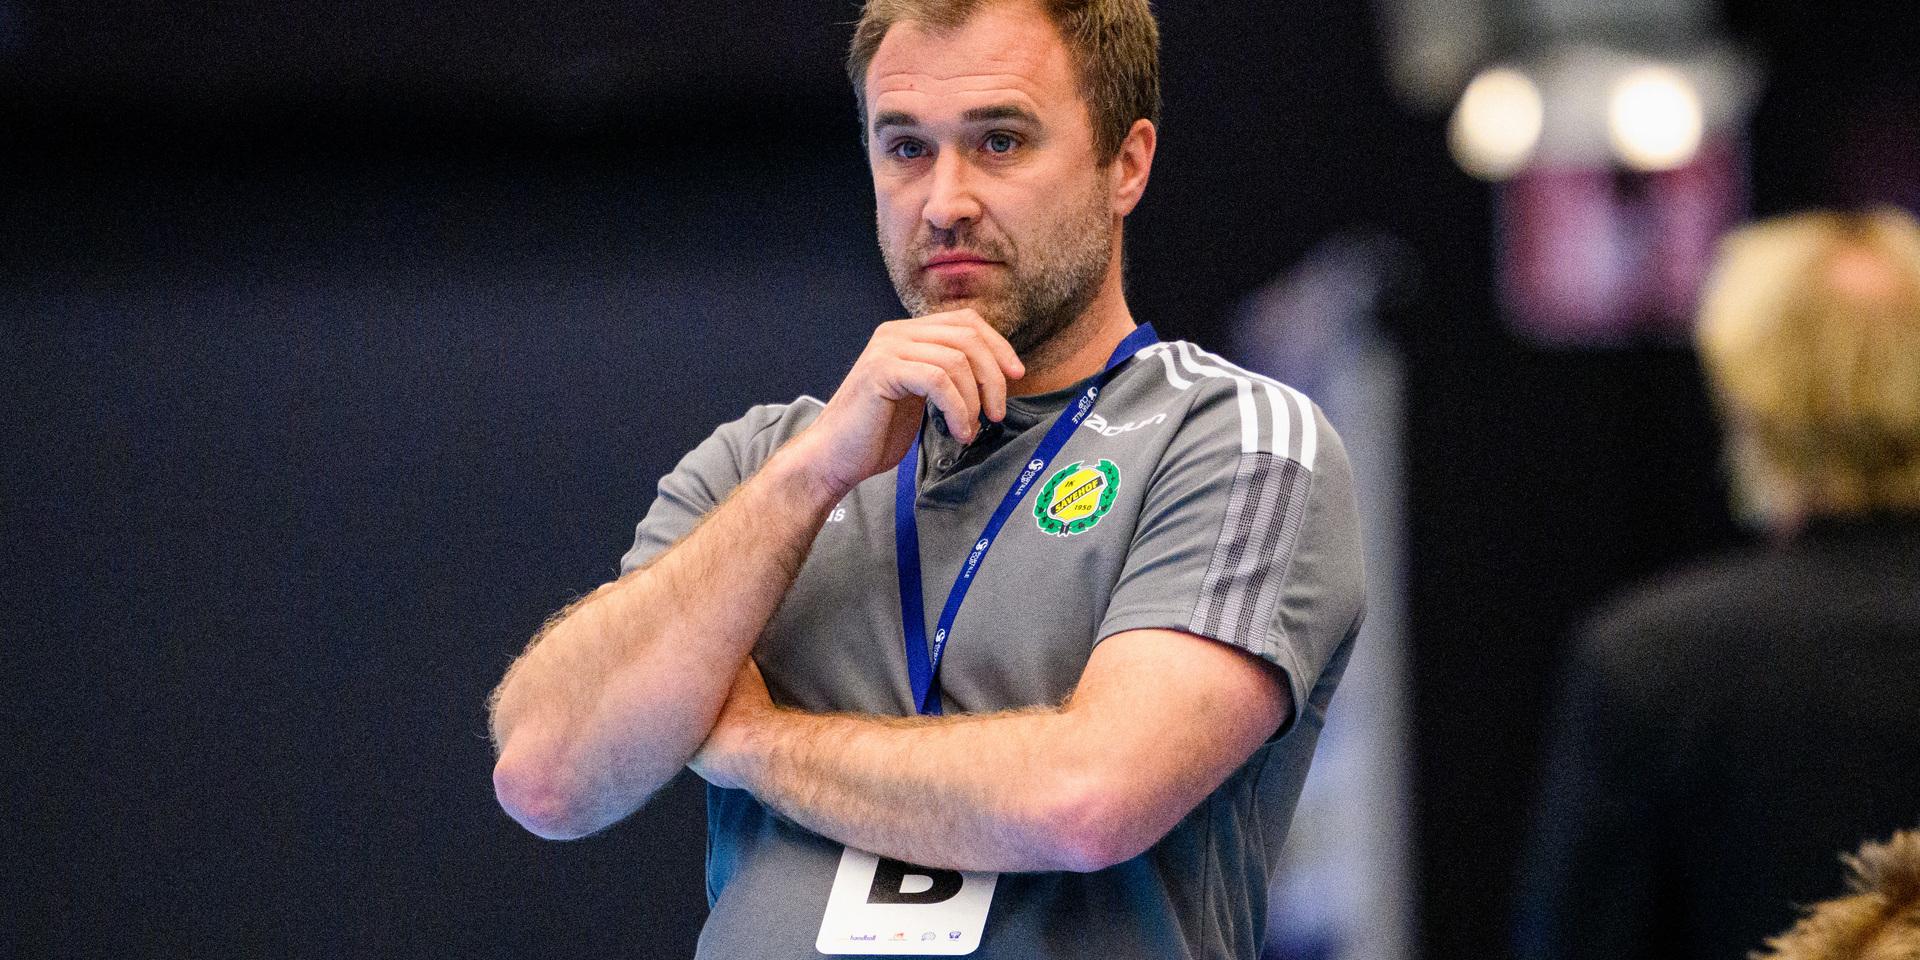 Sävehofs tränare Michael Apelgren kommer i framtiden balansera uppdraget i Sävehof med jobbet som assisterande tränare i landslaget. 